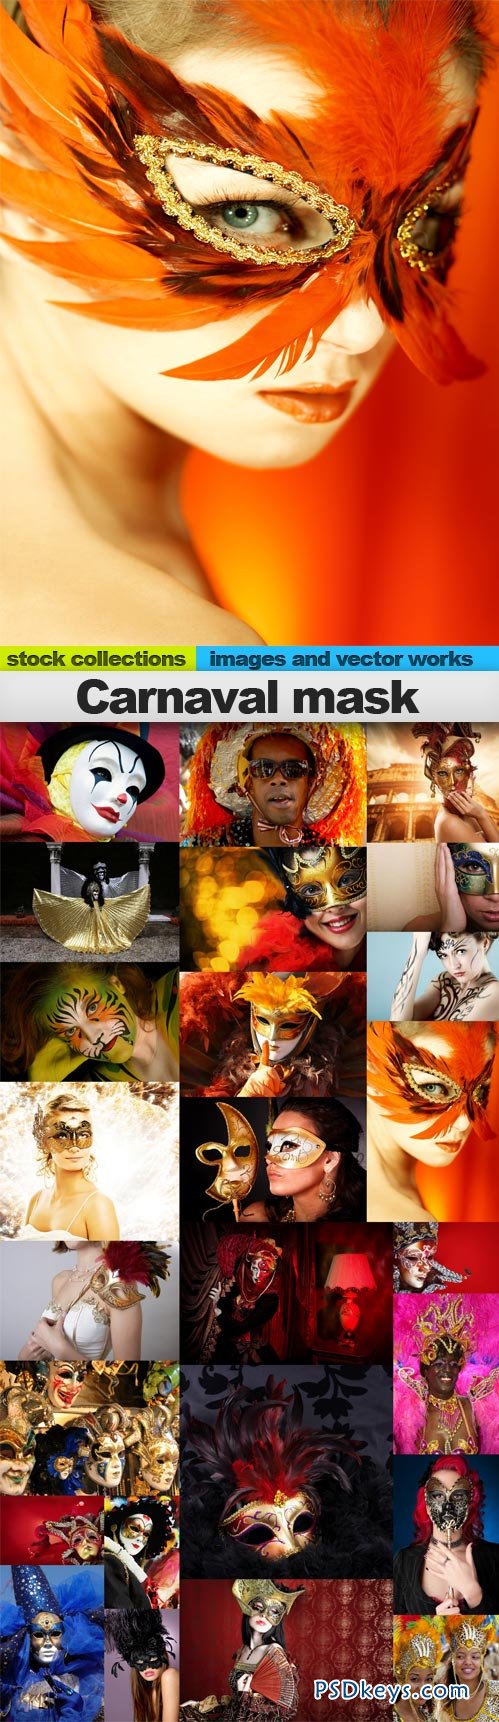 Carnaval mask 25xUHQ JPEG